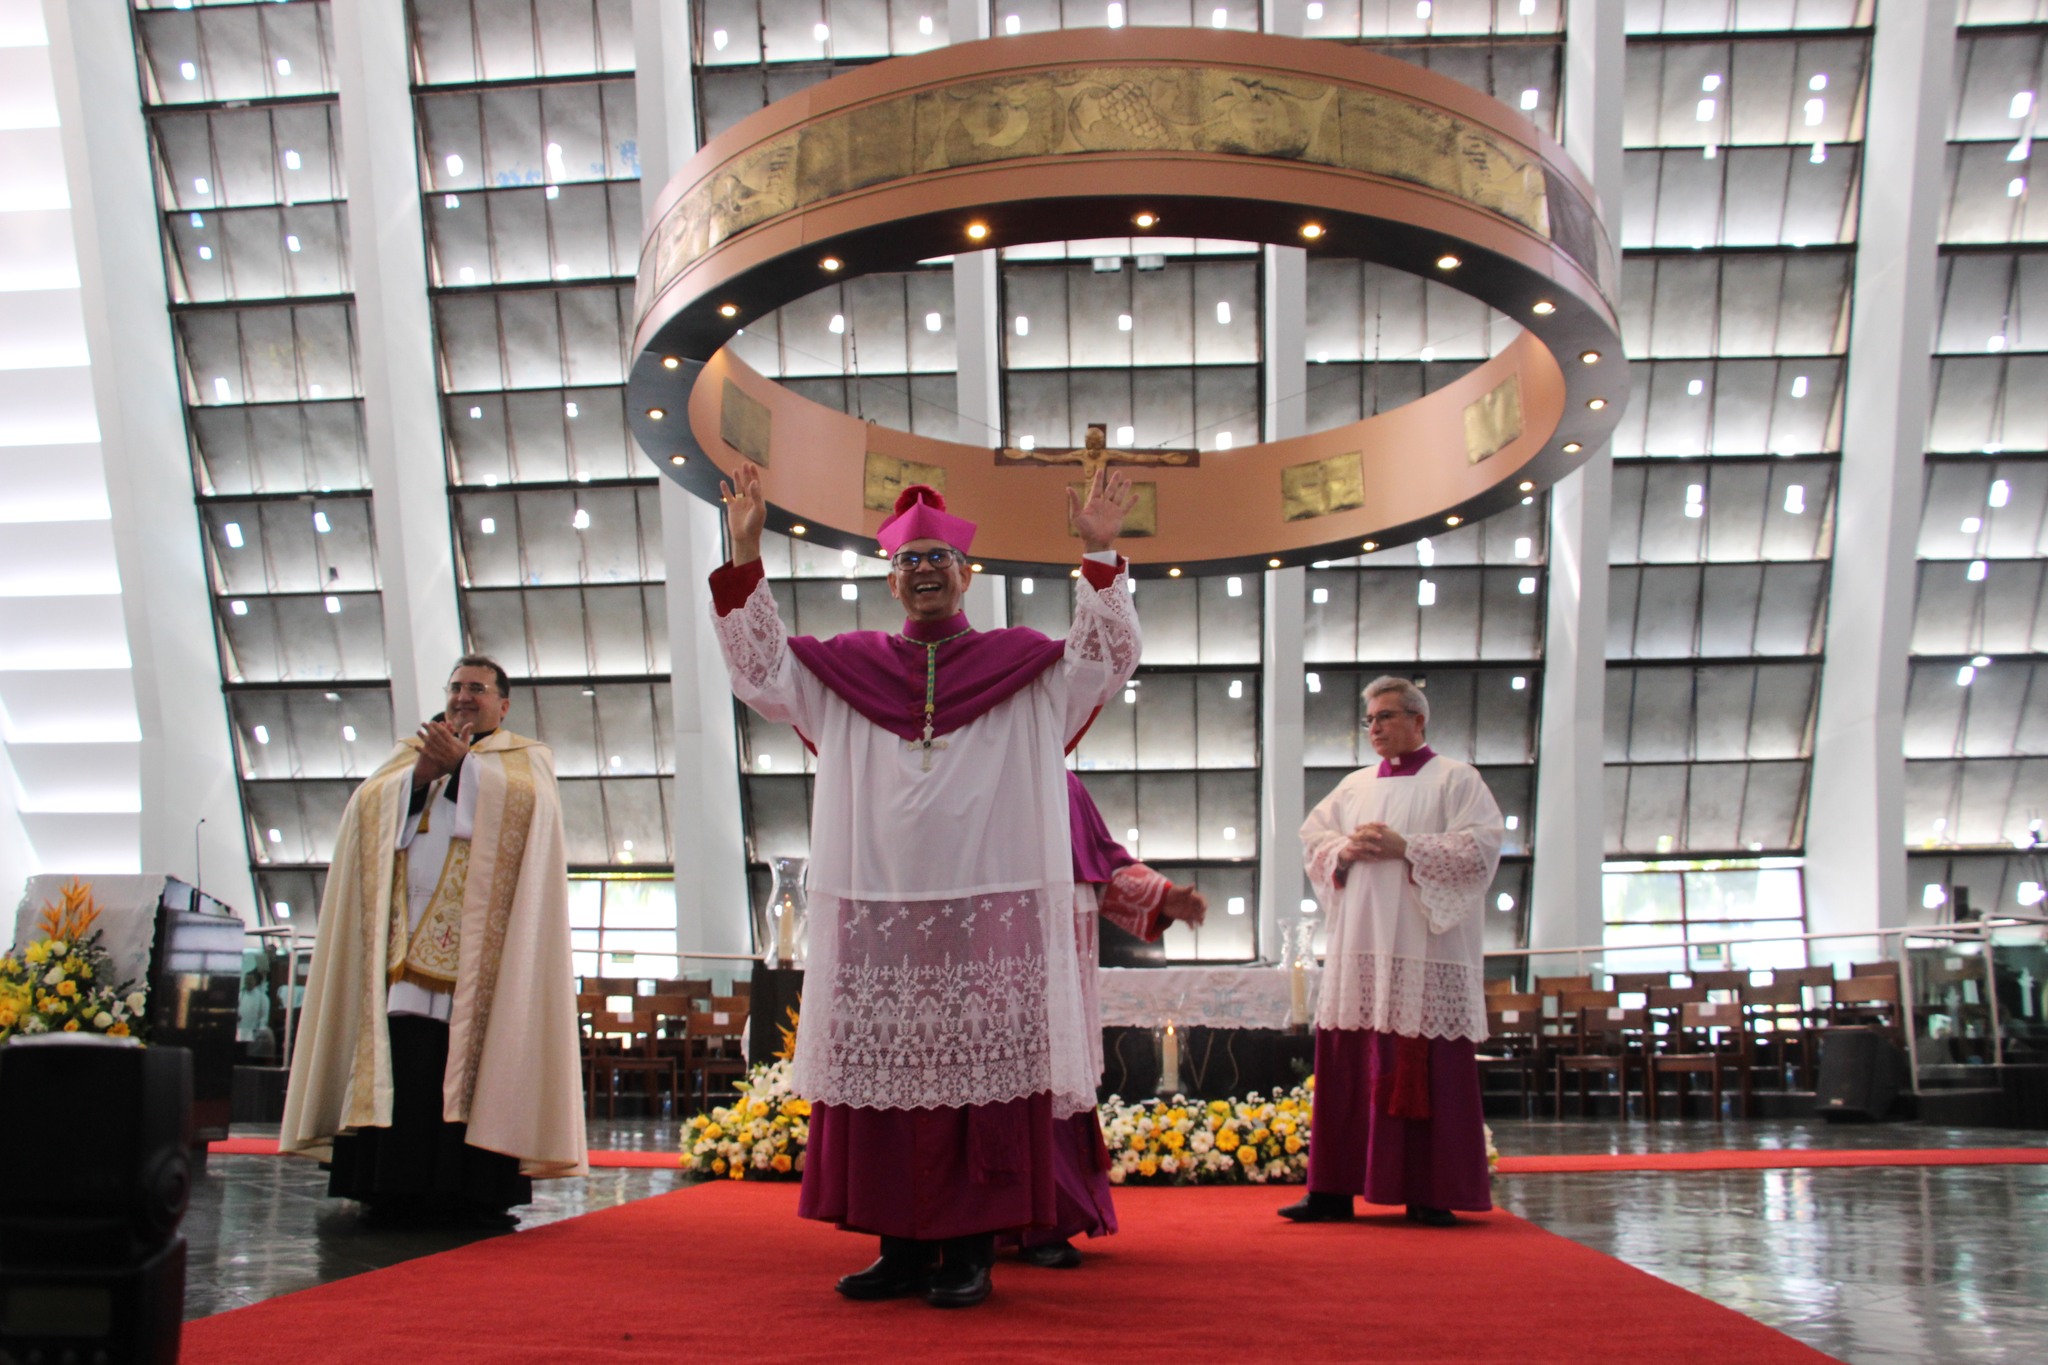 Dom João Santos Cardoso toma posse como novo arcebispo de Natal, Rio  Grande do Norte